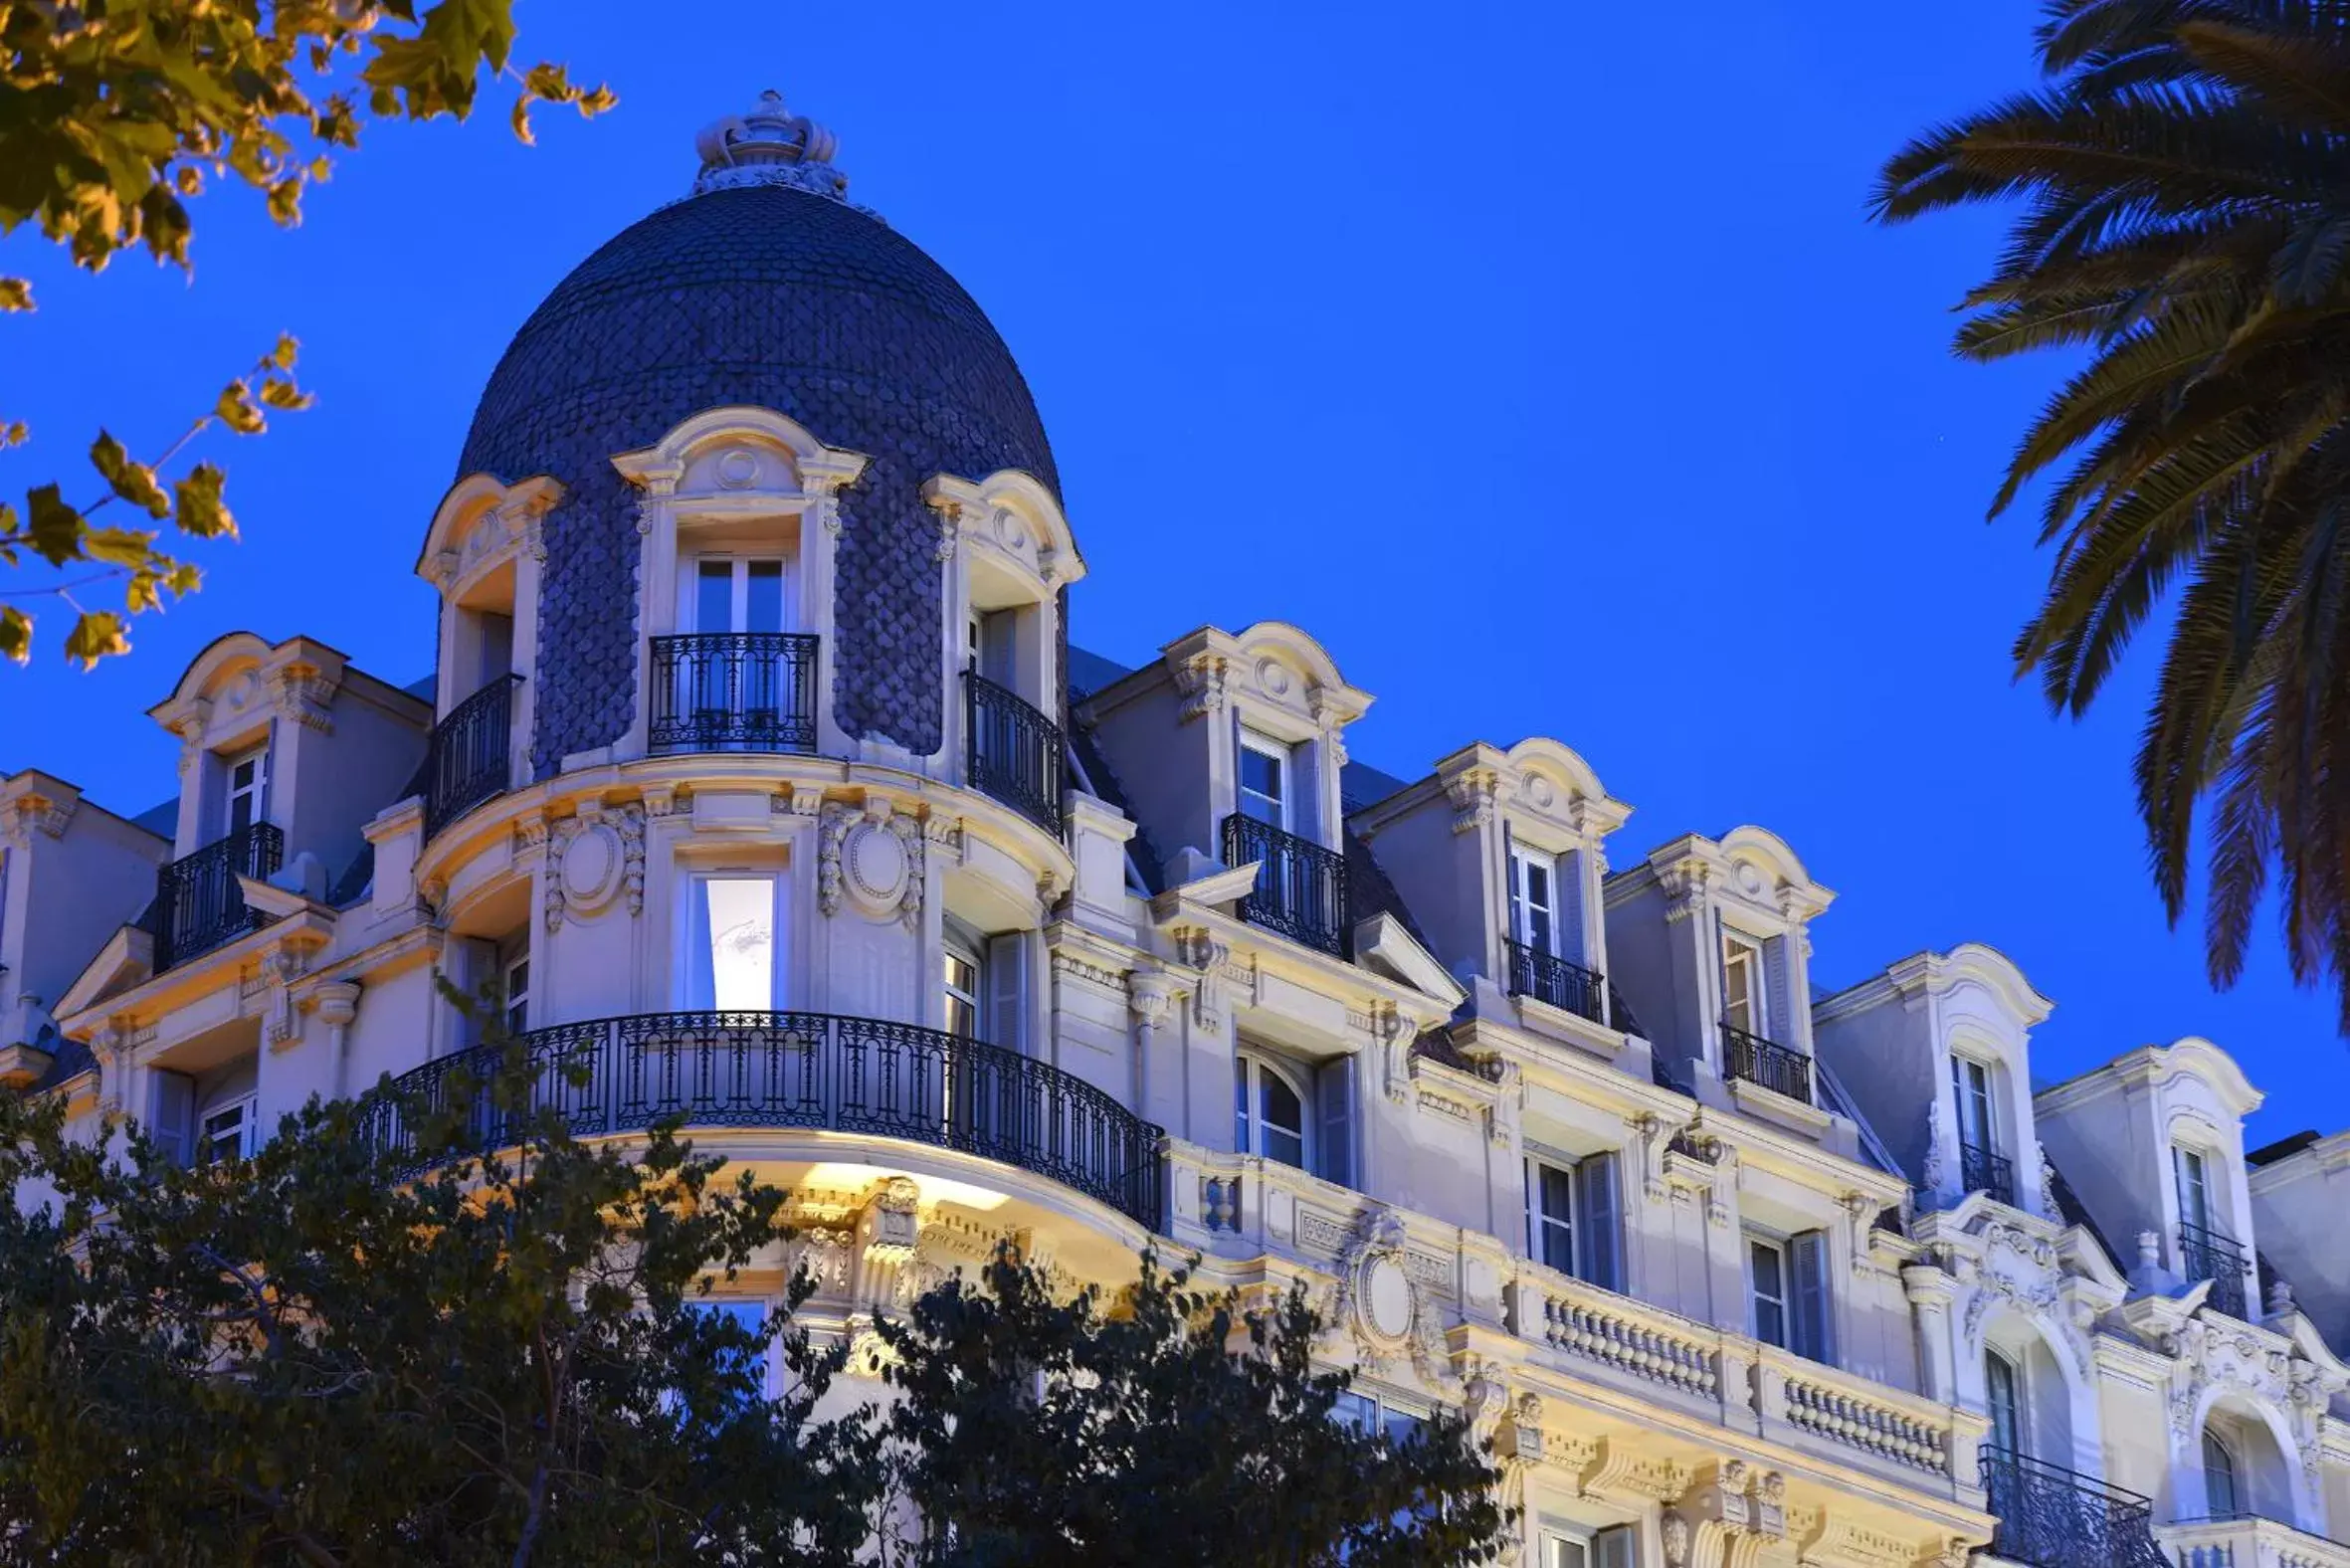 Facade/entrance, Property Building in Hotel La Villa Nice Victor Hugo